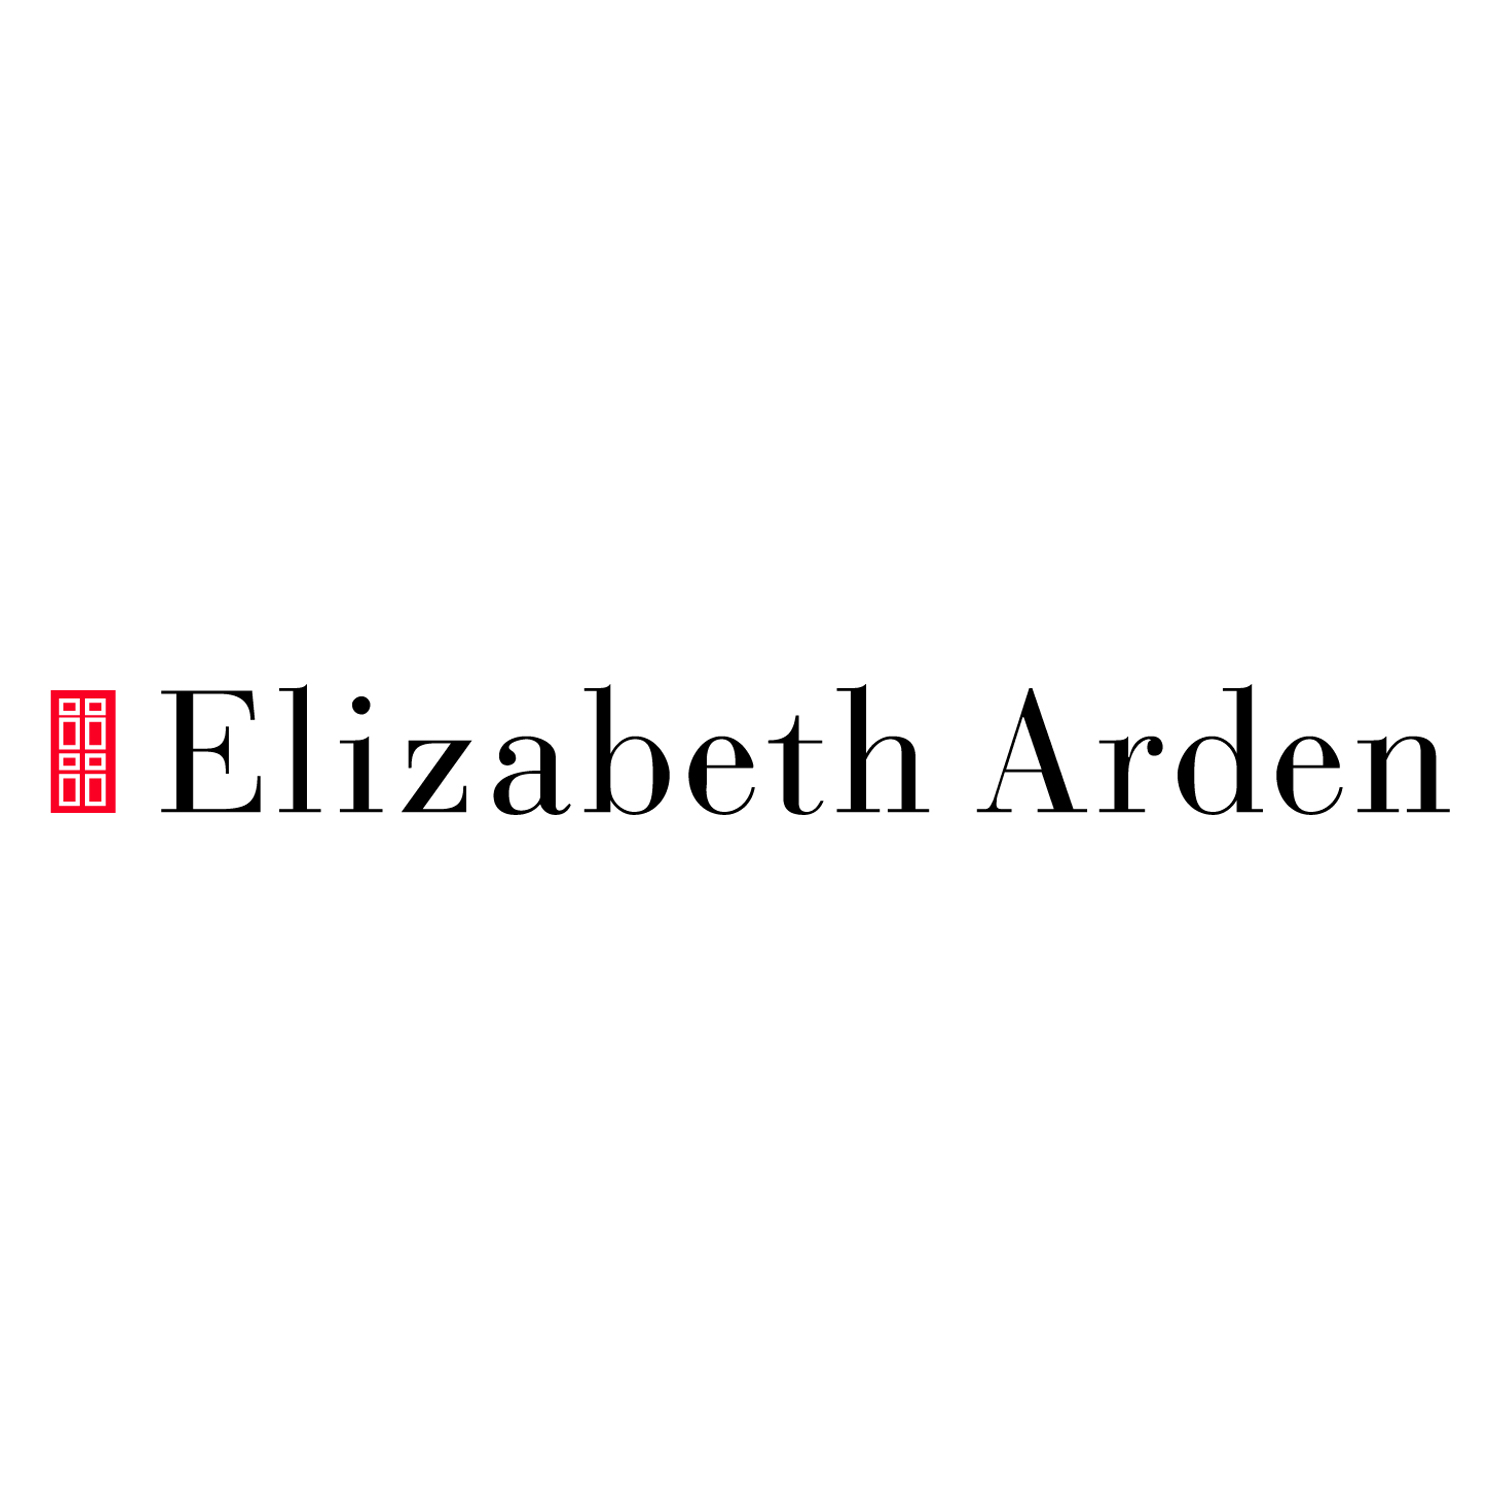 Elizabeth Arden Logo.jpg